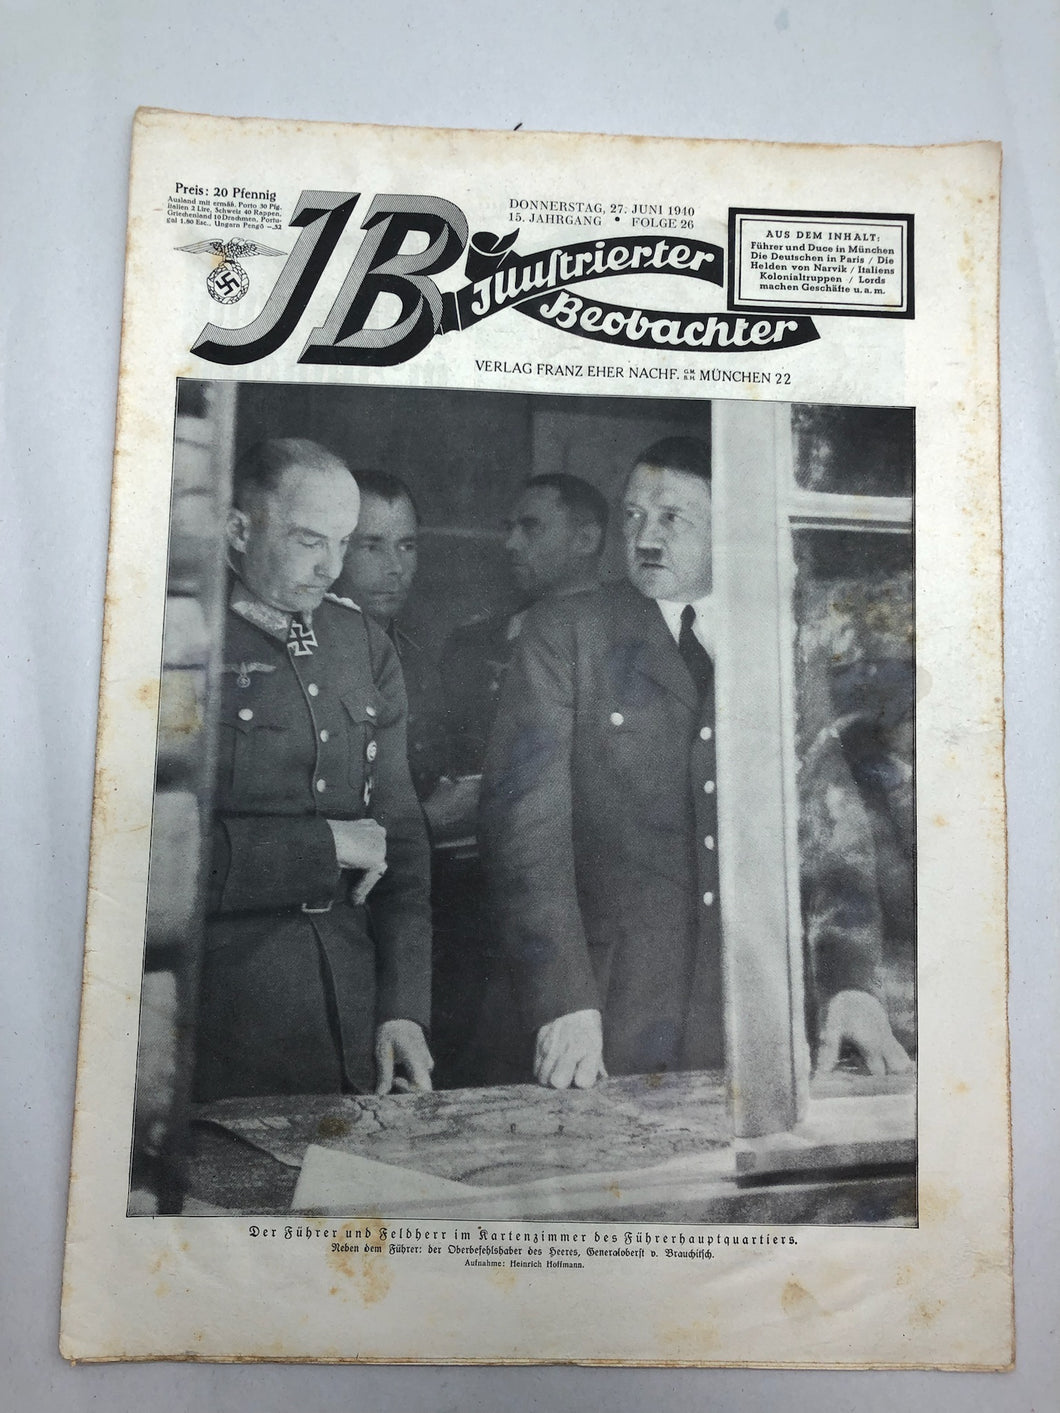 JB Juustrierter Beobachter NSDAP Magazine Original WW2 German - 27 June 1940